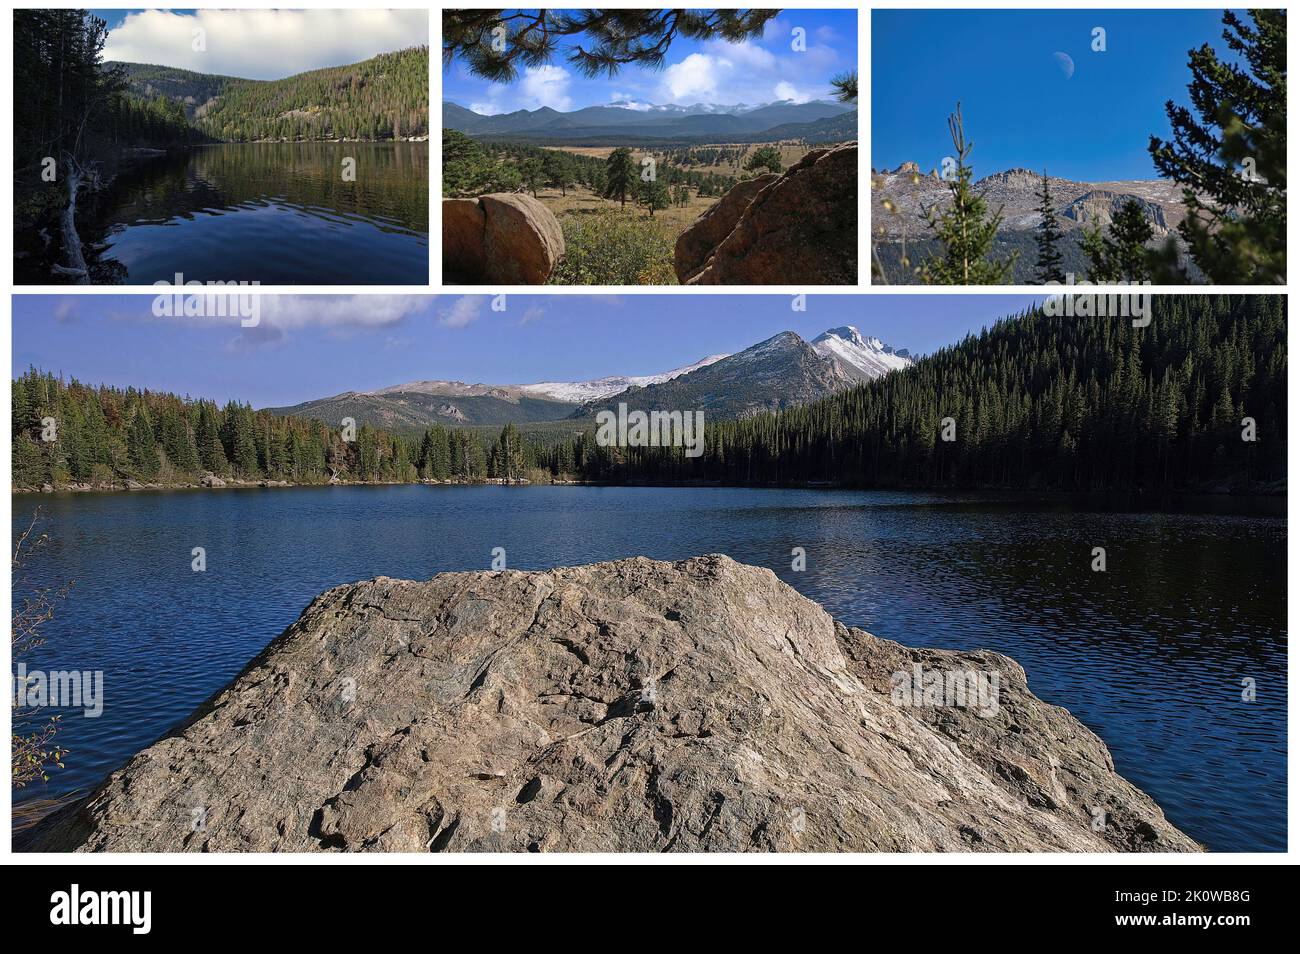 Immergé dans la nature des montagnes Rocheuses (Colorado USA), il est situé la belle réserve naturelle d'Estes Park Banque D'Images